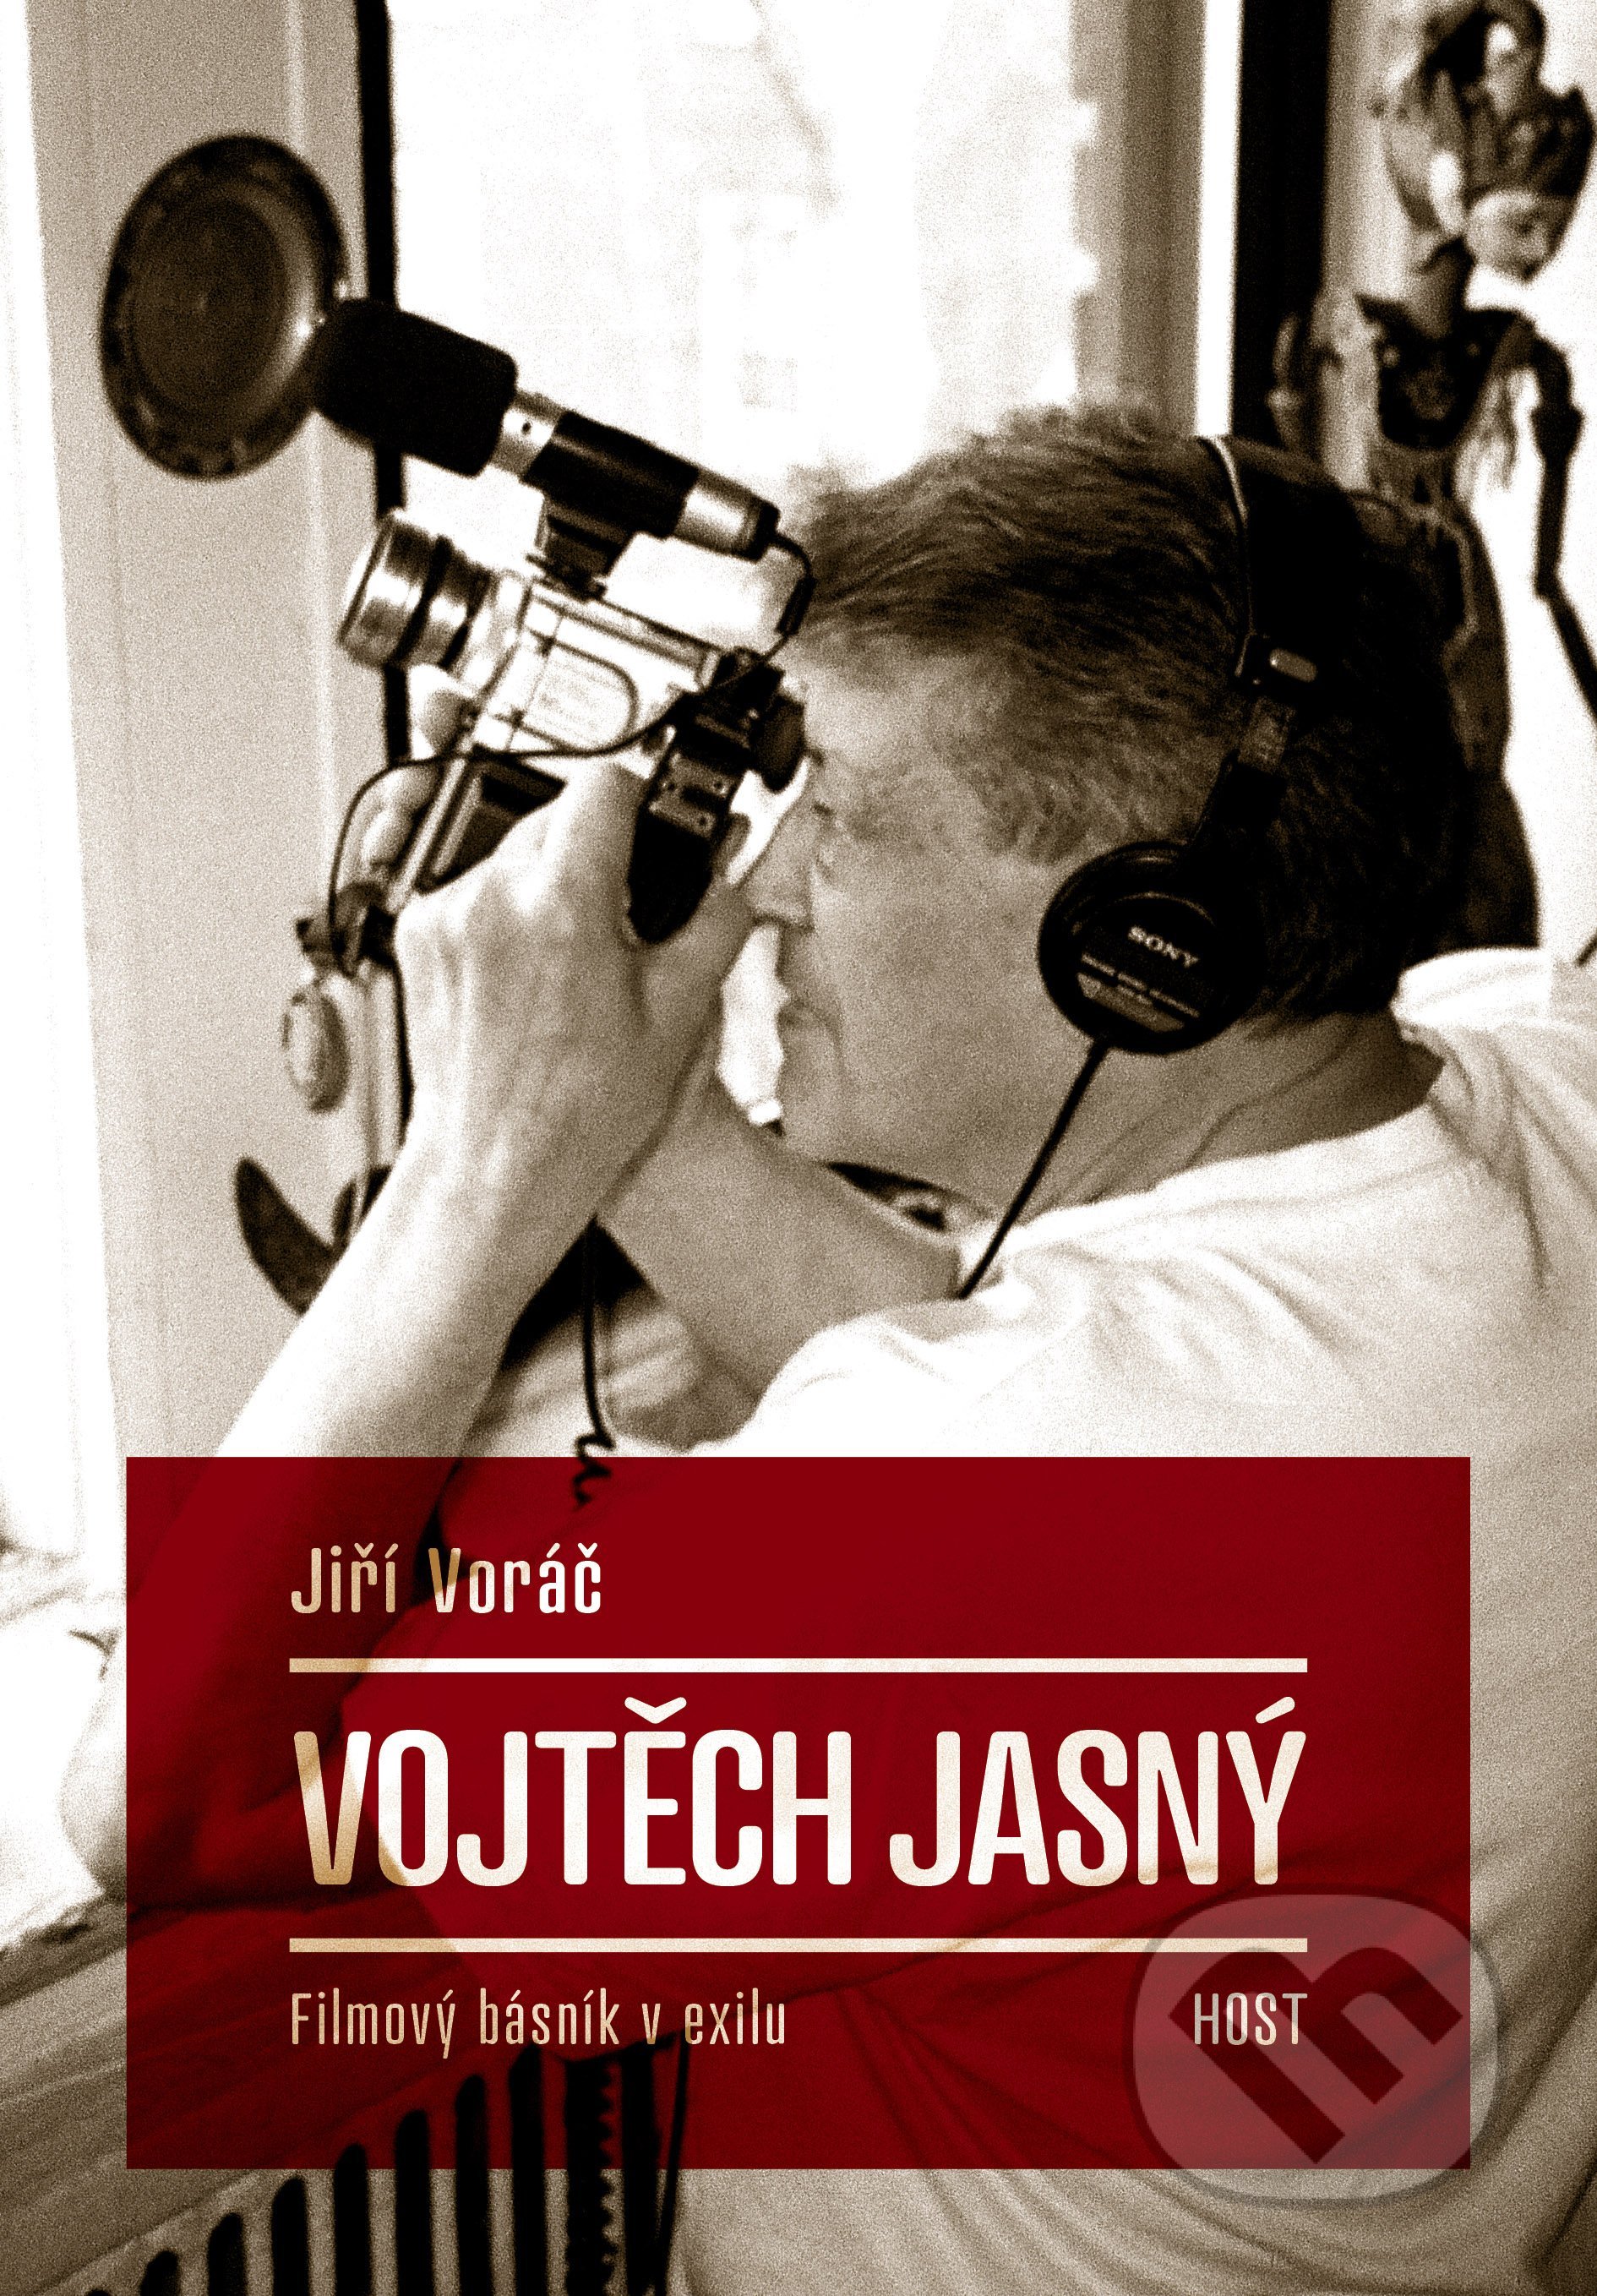 Vojtěch Jasný - Jiří Voráč, Host, 2020